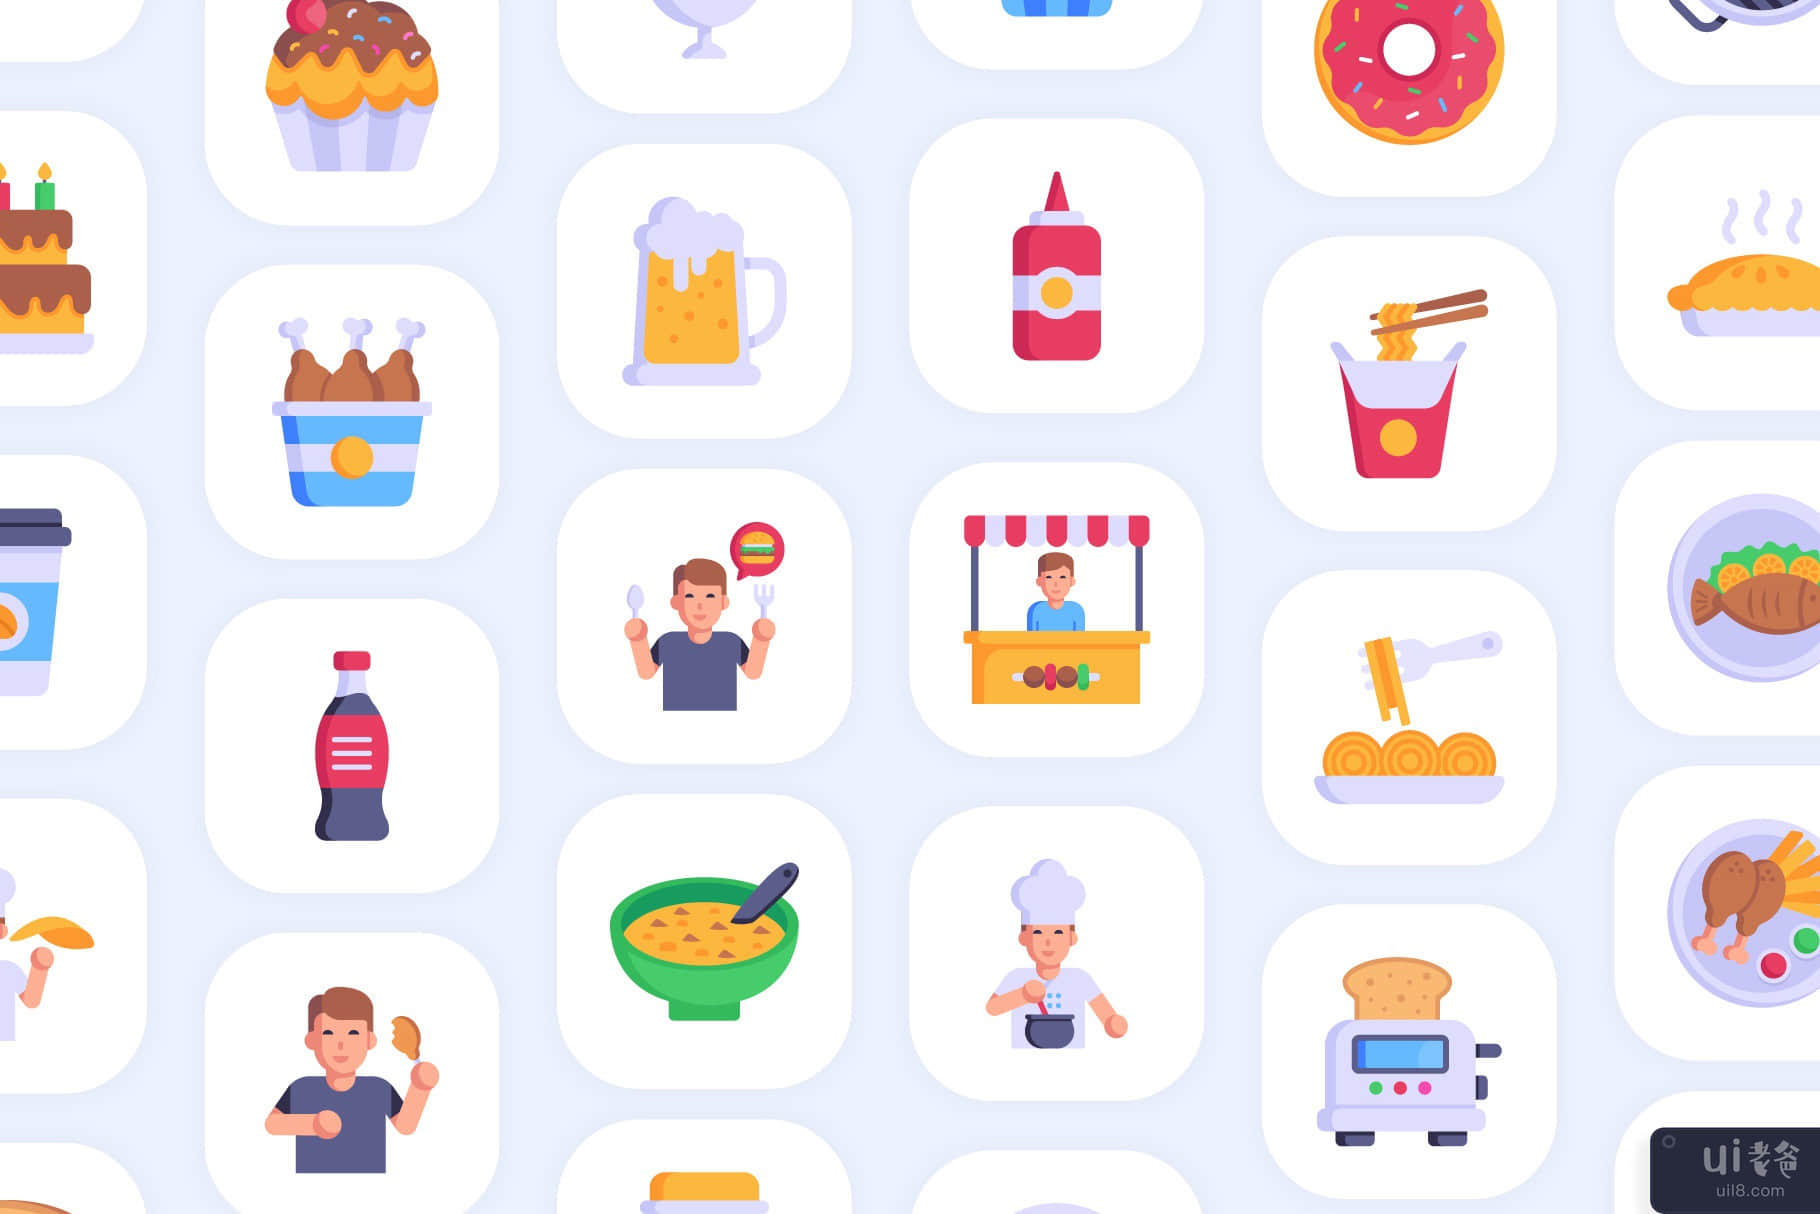 50 个快餐矢量图标(50 Fast Food vectors Icons)插图1